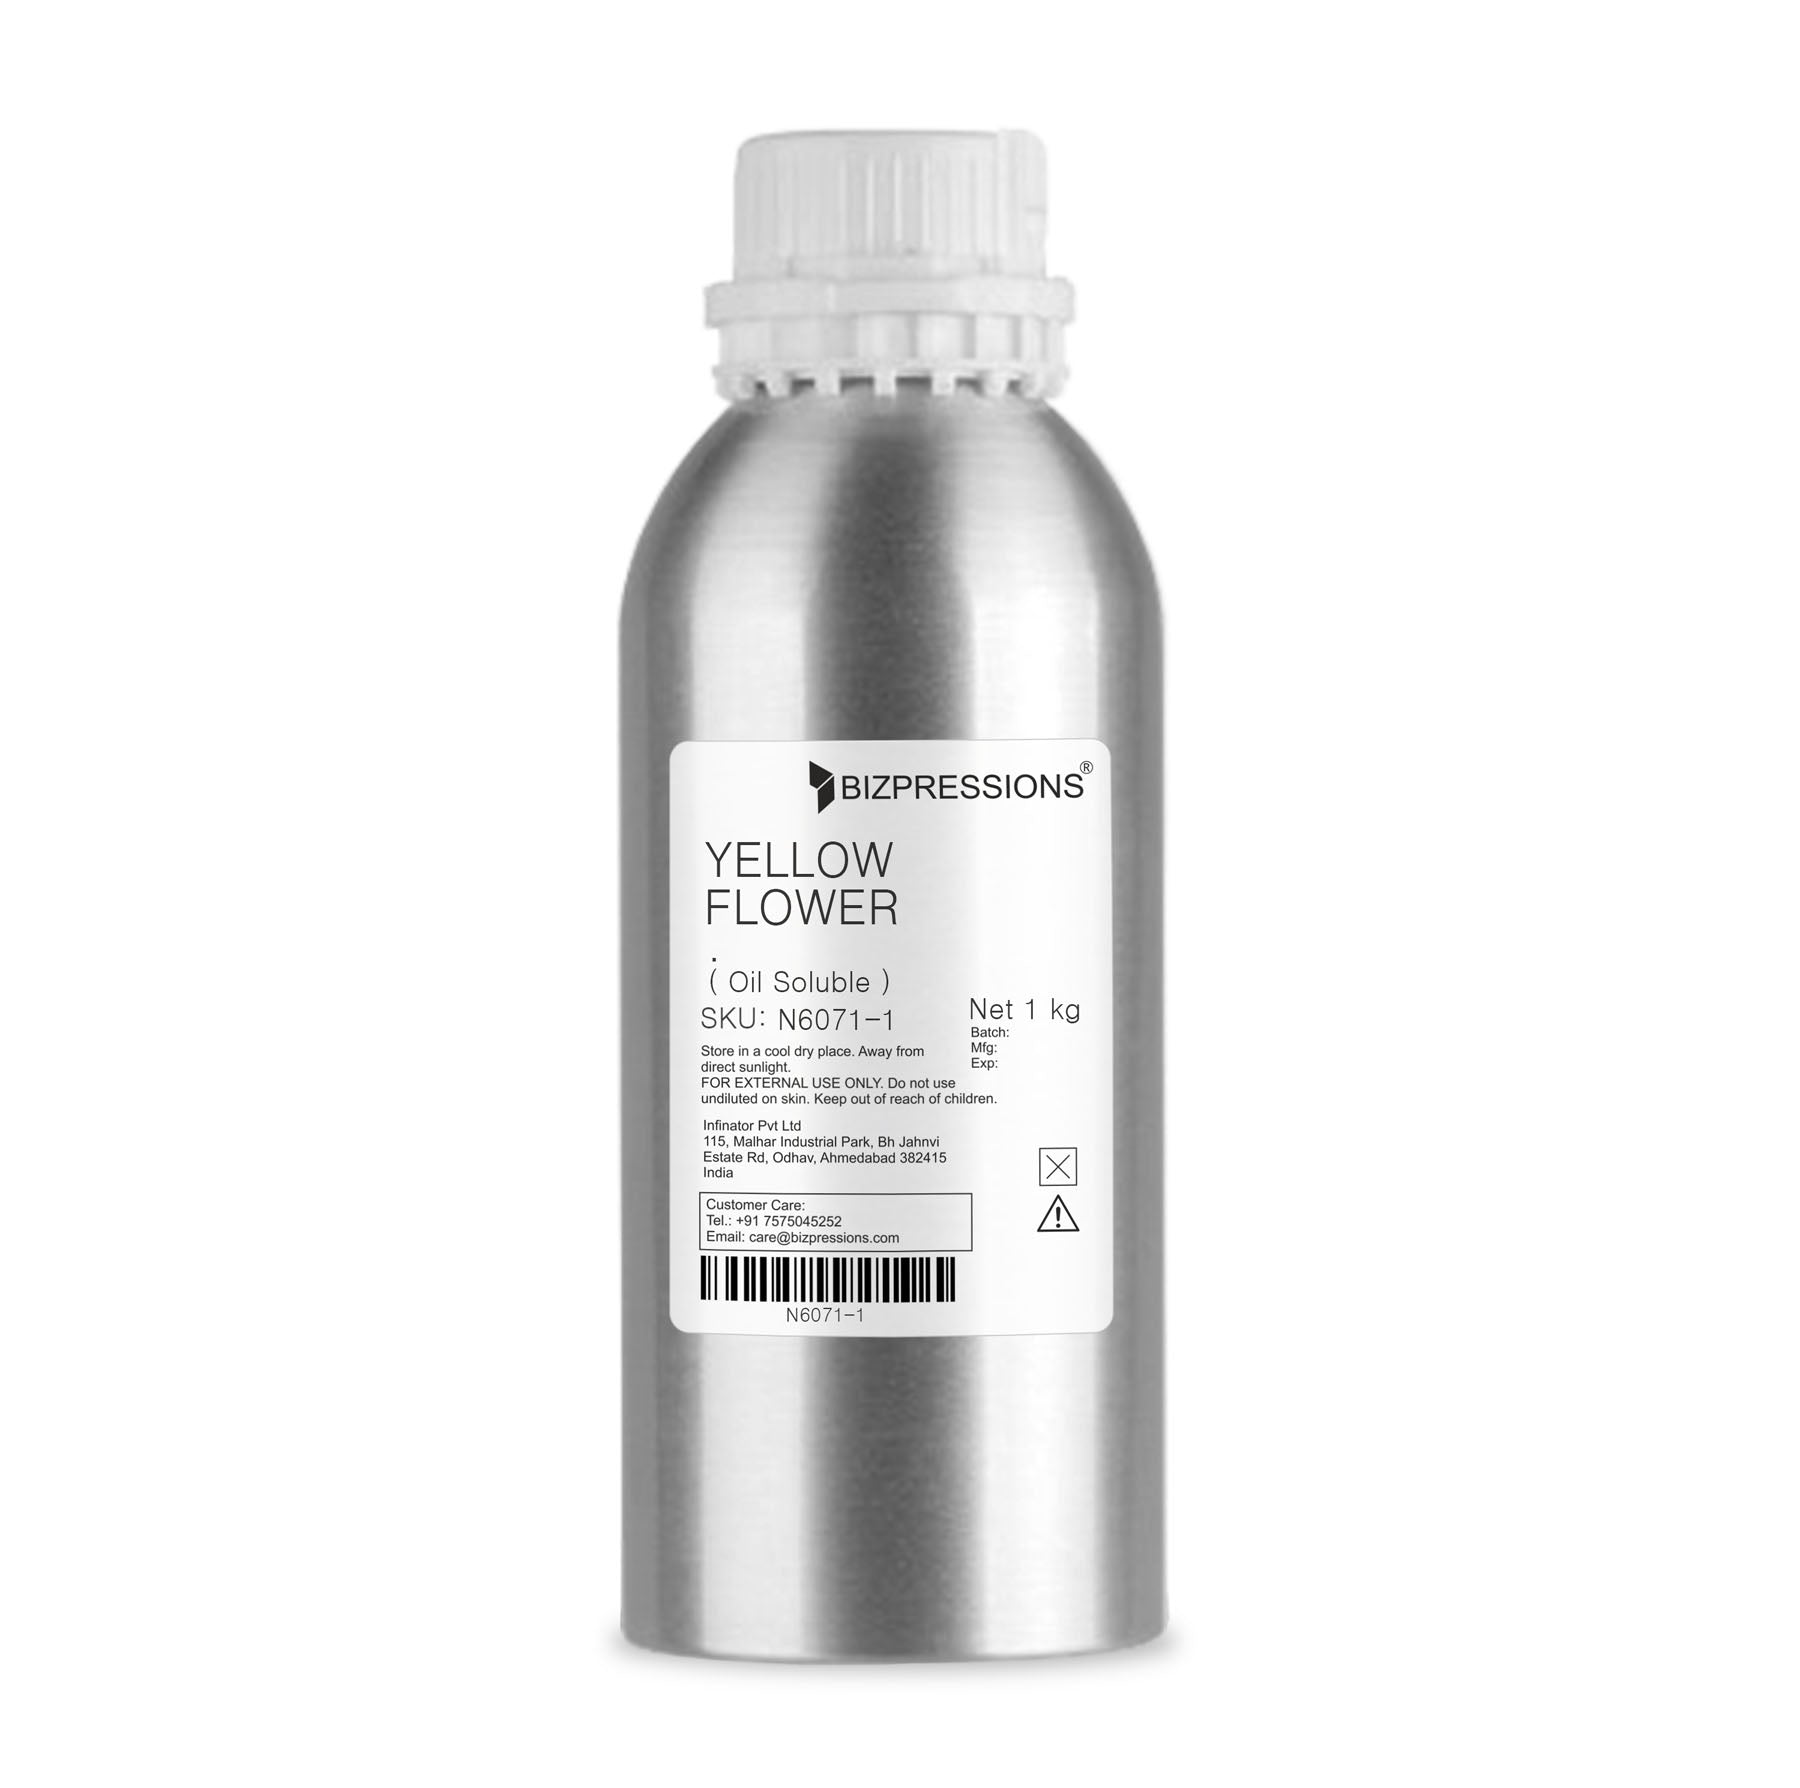 YELLOW FLOWER - Fragrance ( Oil Soluble ) - 1 kg